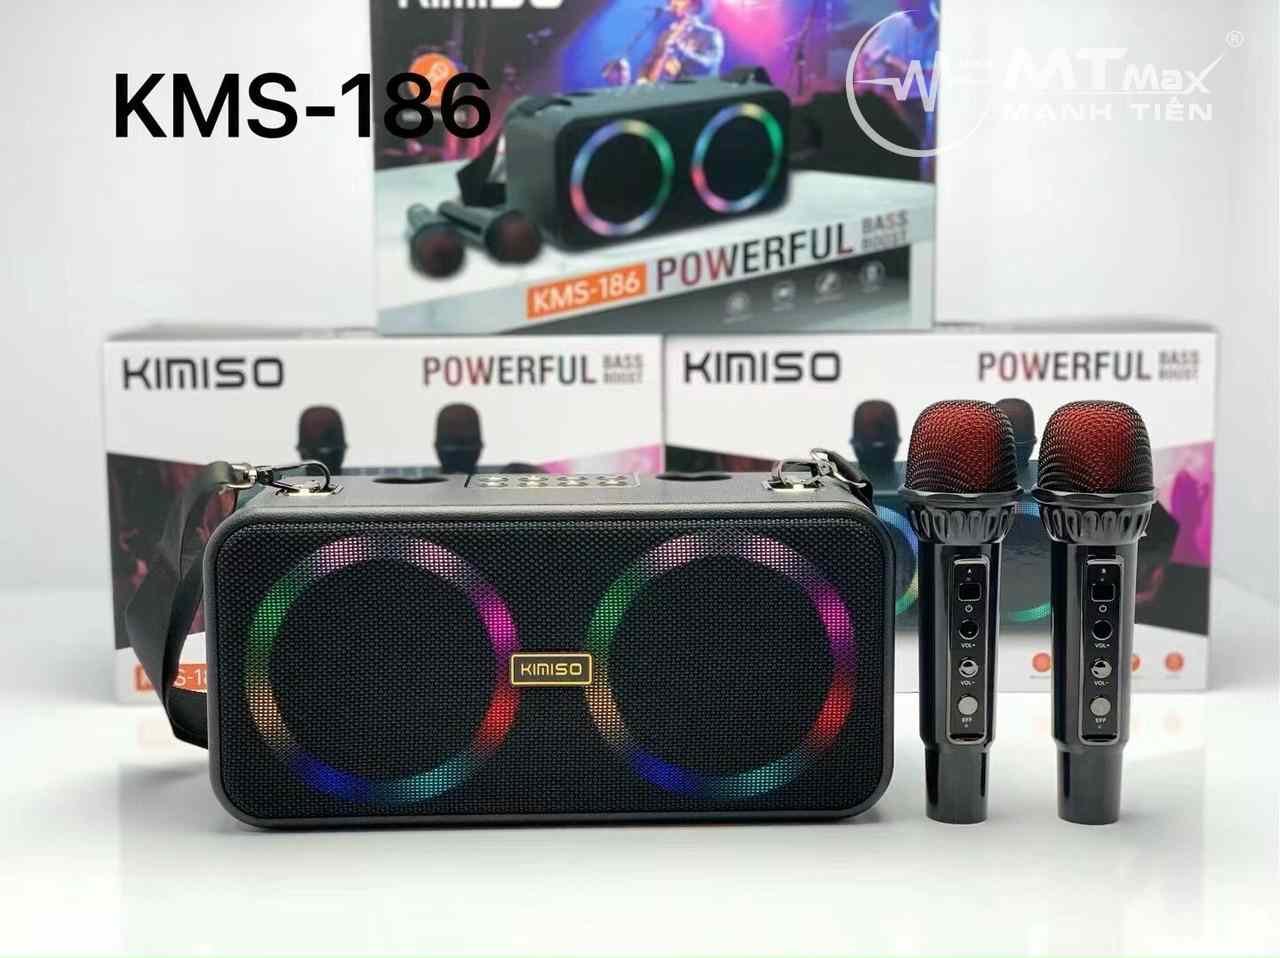 Loa karaoke mini KMS 186 bluetooth kèm 2 micro có chức năng reverb - công suất 20w bass căng, hát karaoke với âm thanh cực hay và ngọt kết nốt bluetooth, USB, thẻ nhớ TF, AUX 3.5mm